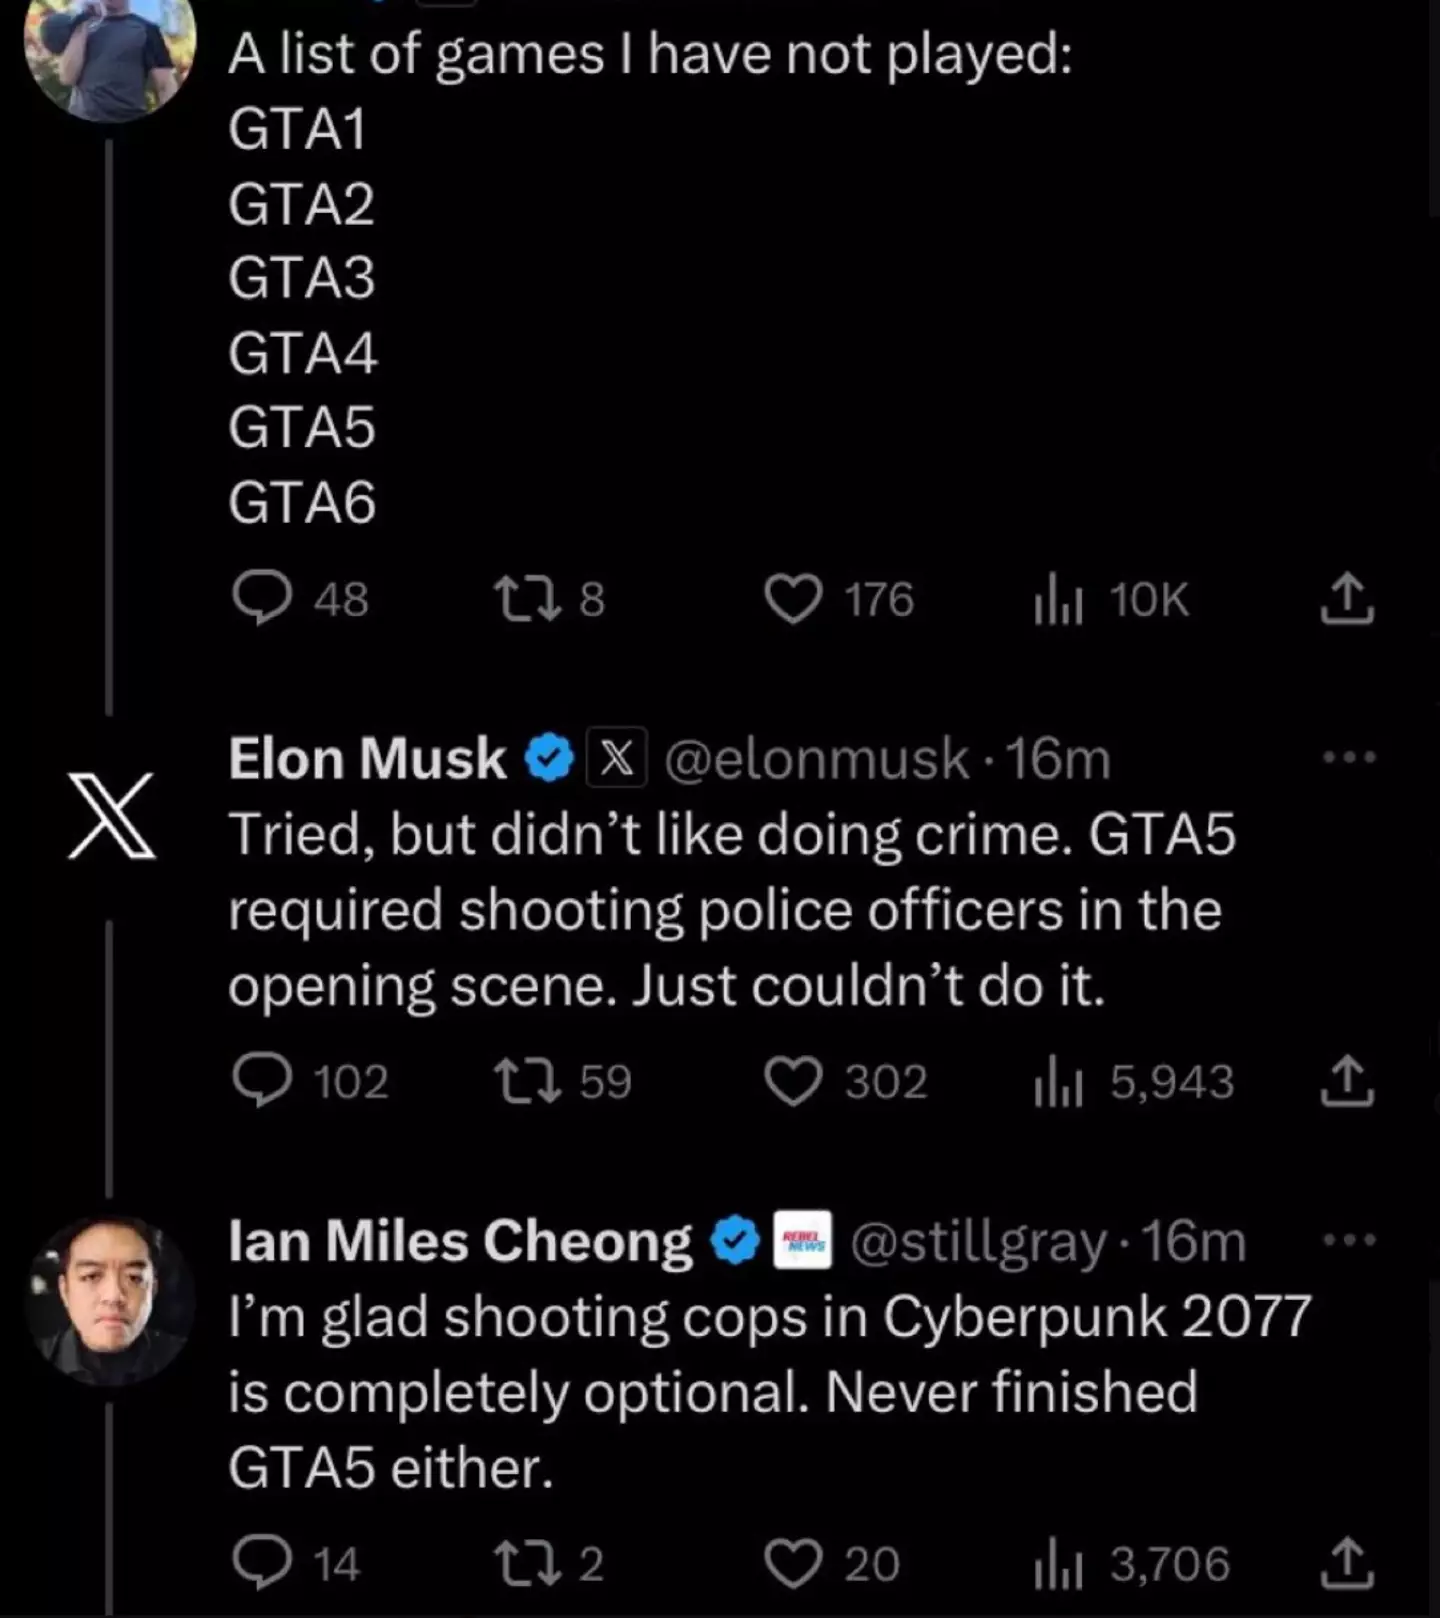 Elon Musk said he didn't like the crime in GTA.